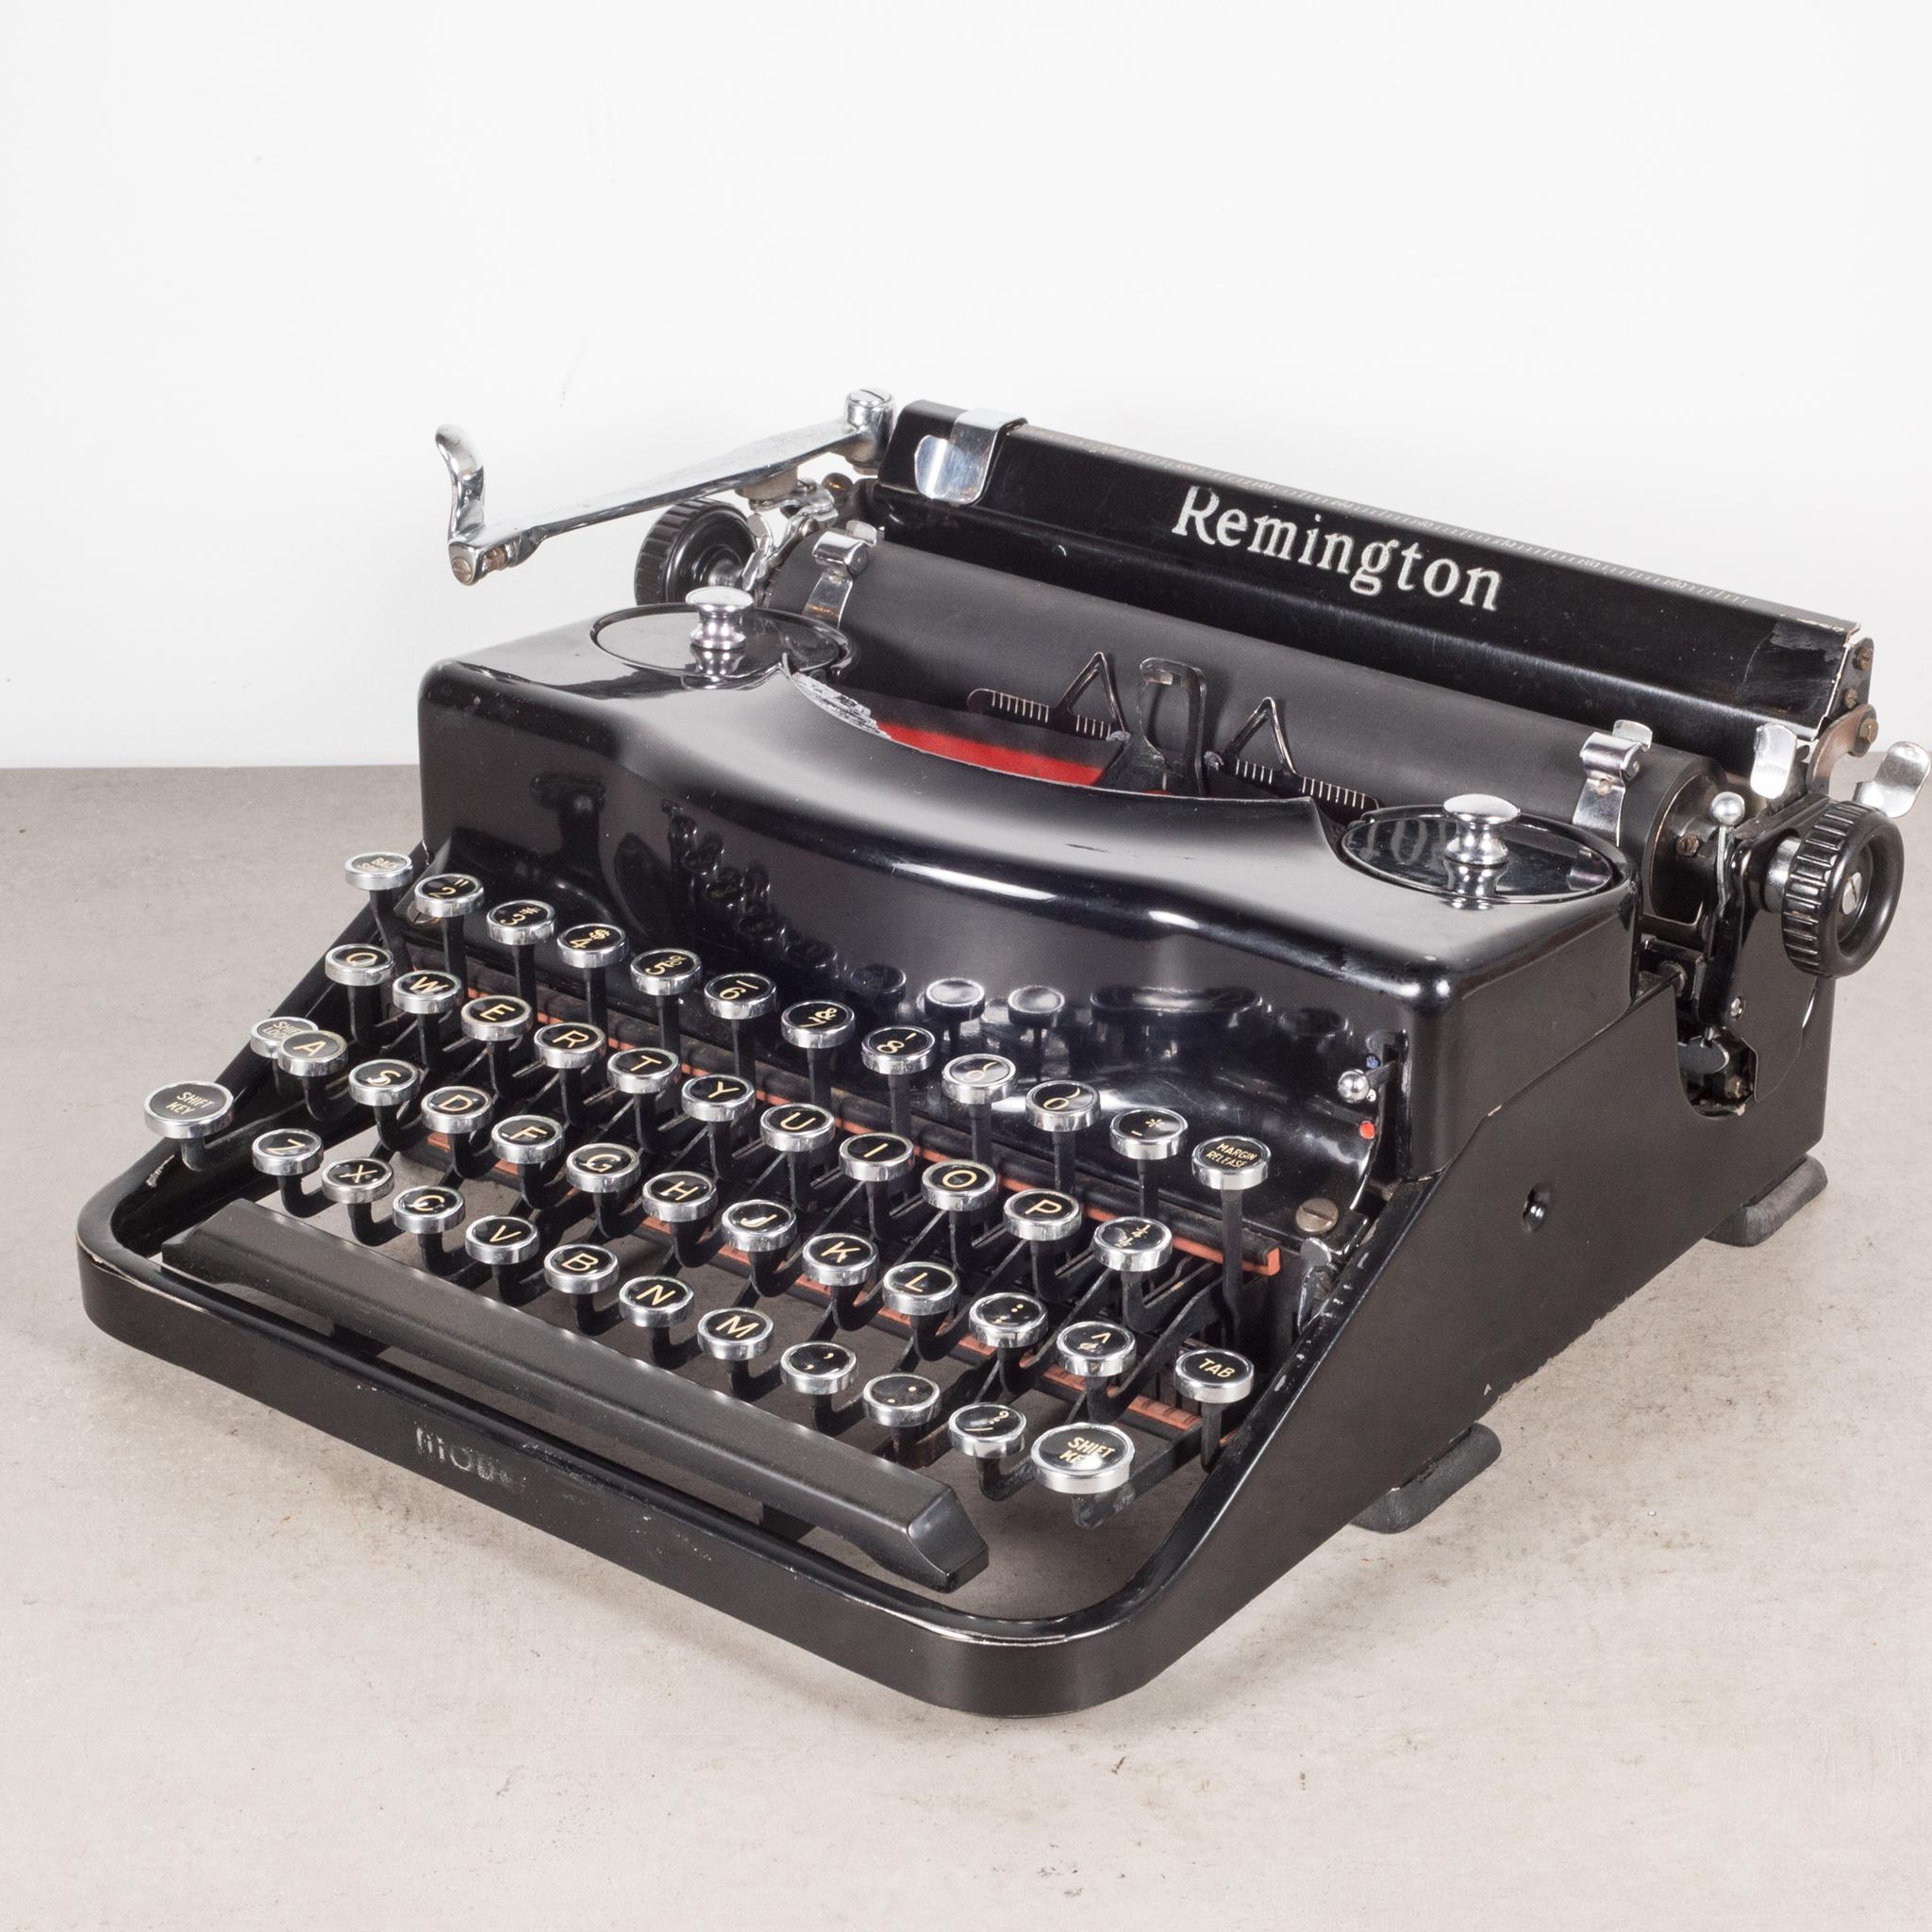 Art Deco Fully Refurbished Remington Model 1 Typewriter, c.1938